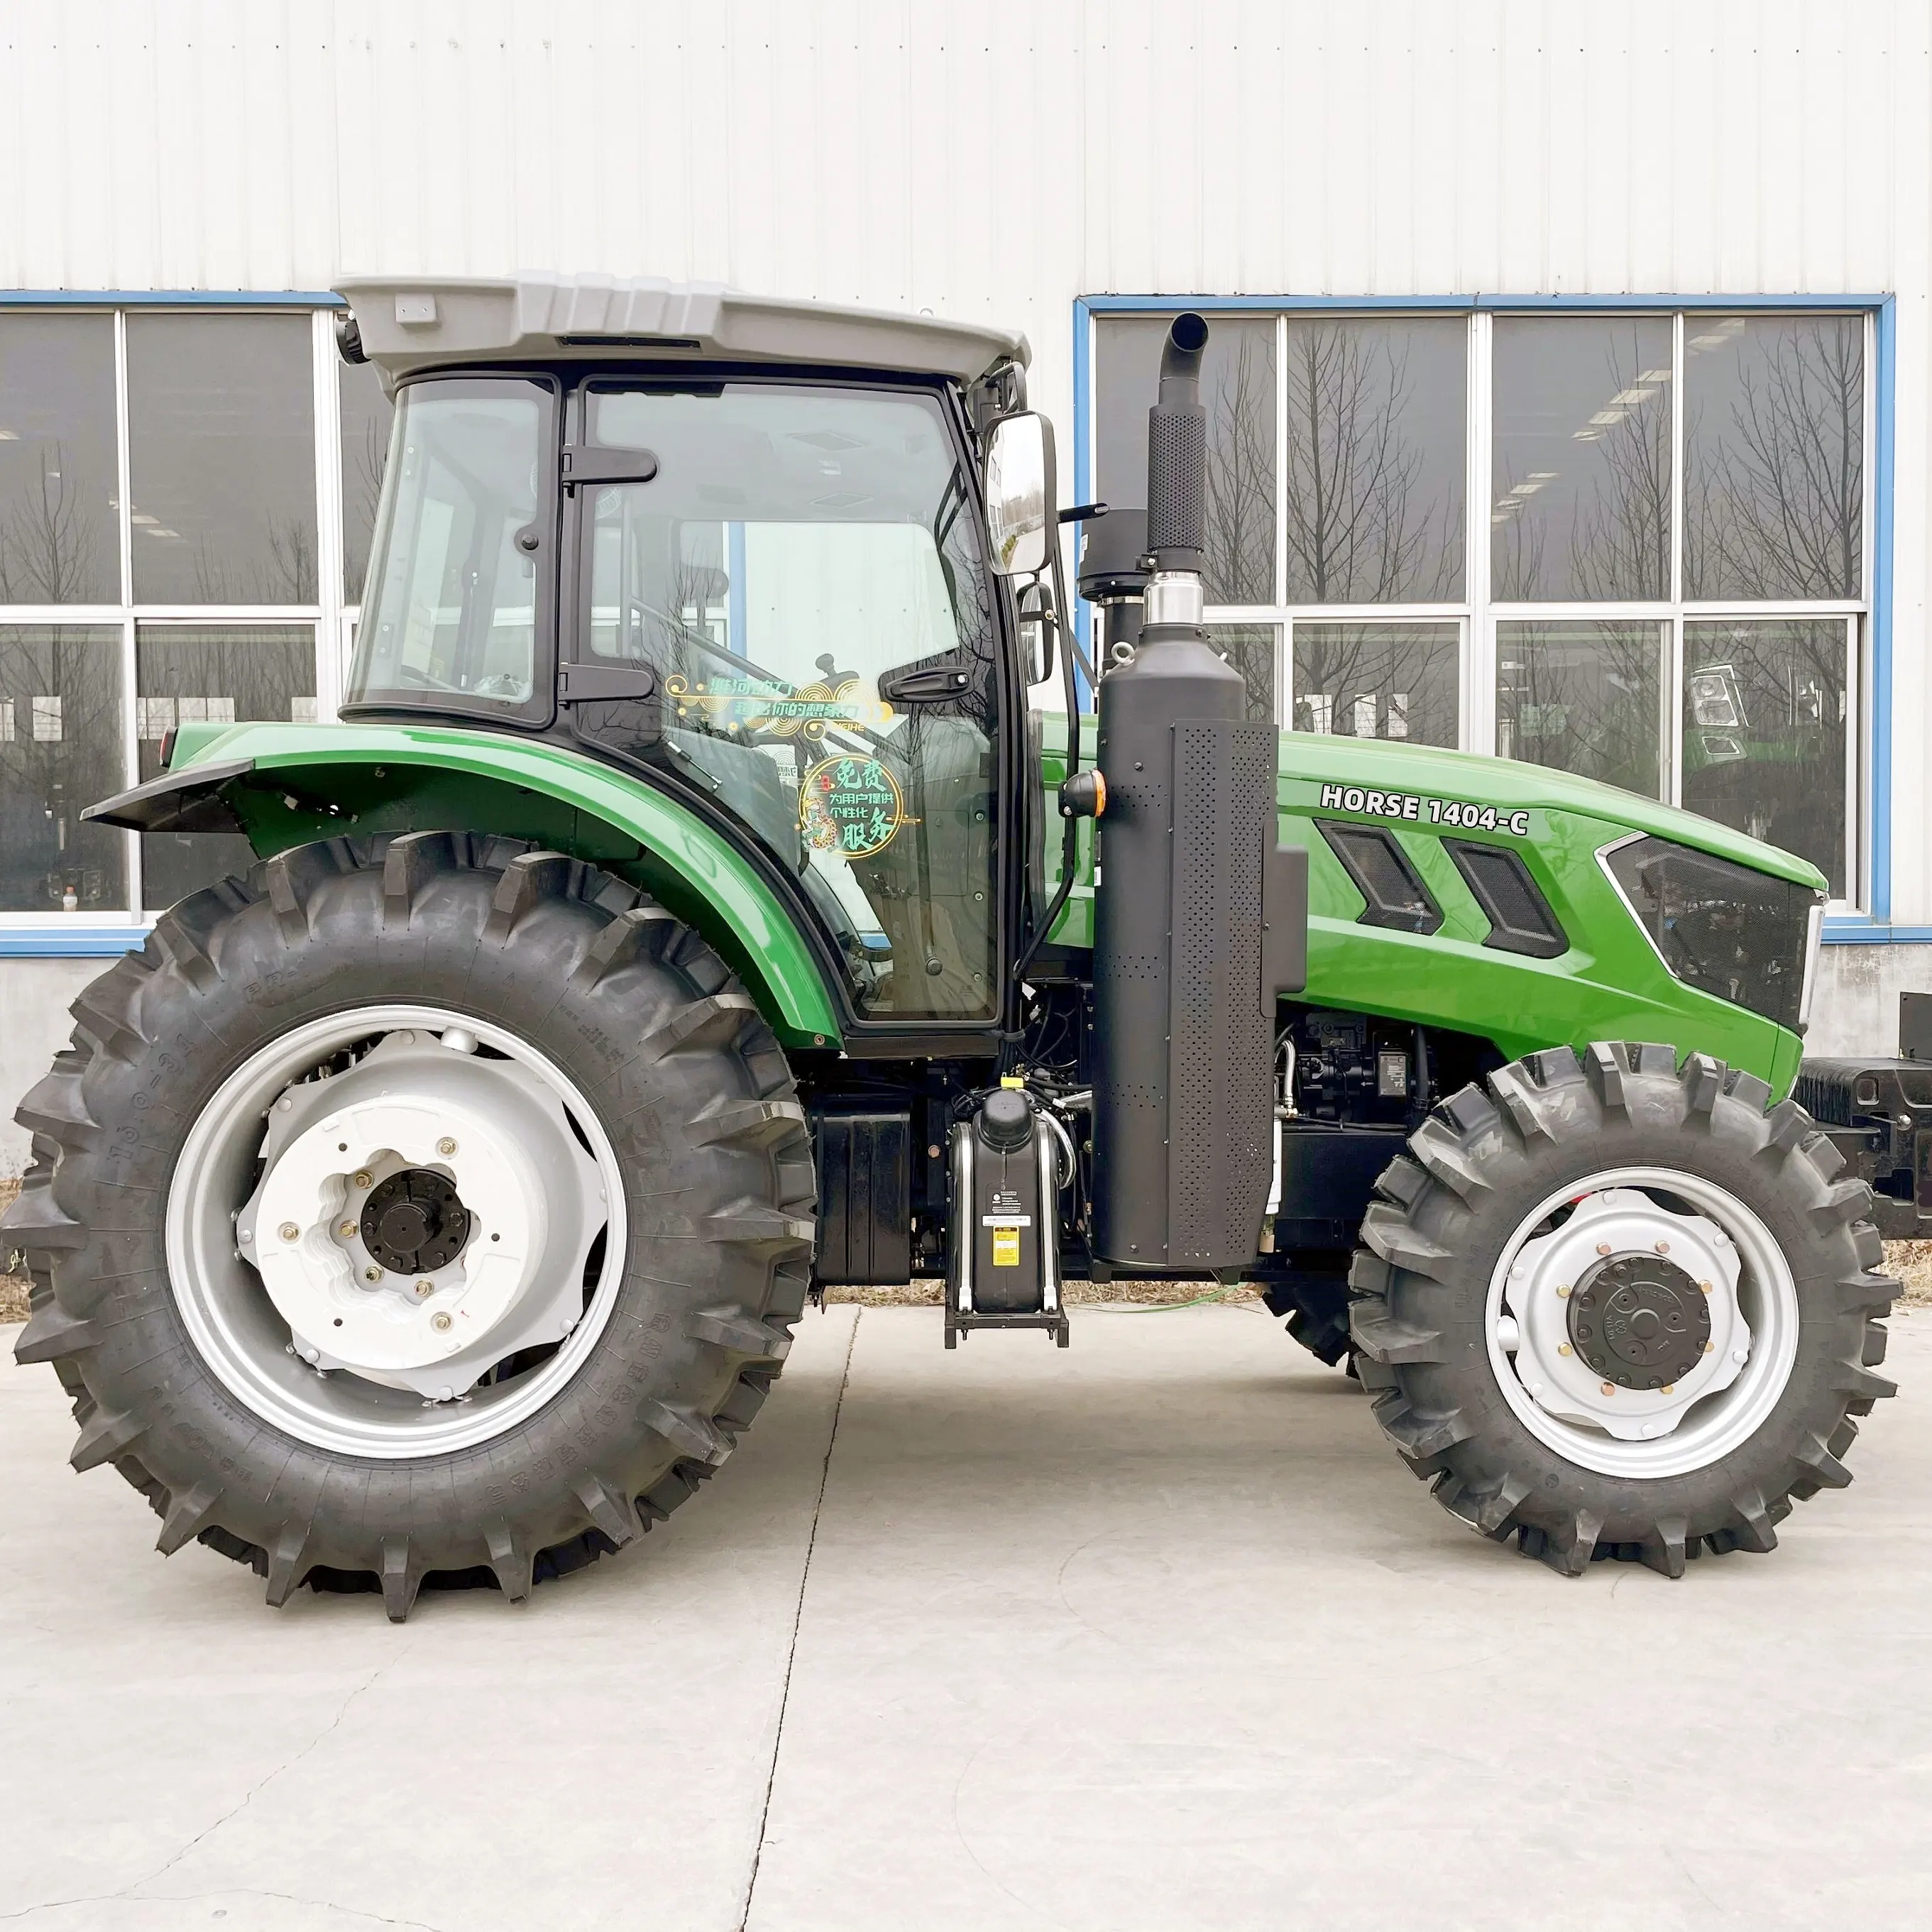 Equipo agrícola tractor agrícola patata maíz amarillo mf385 tractor laidong tractor